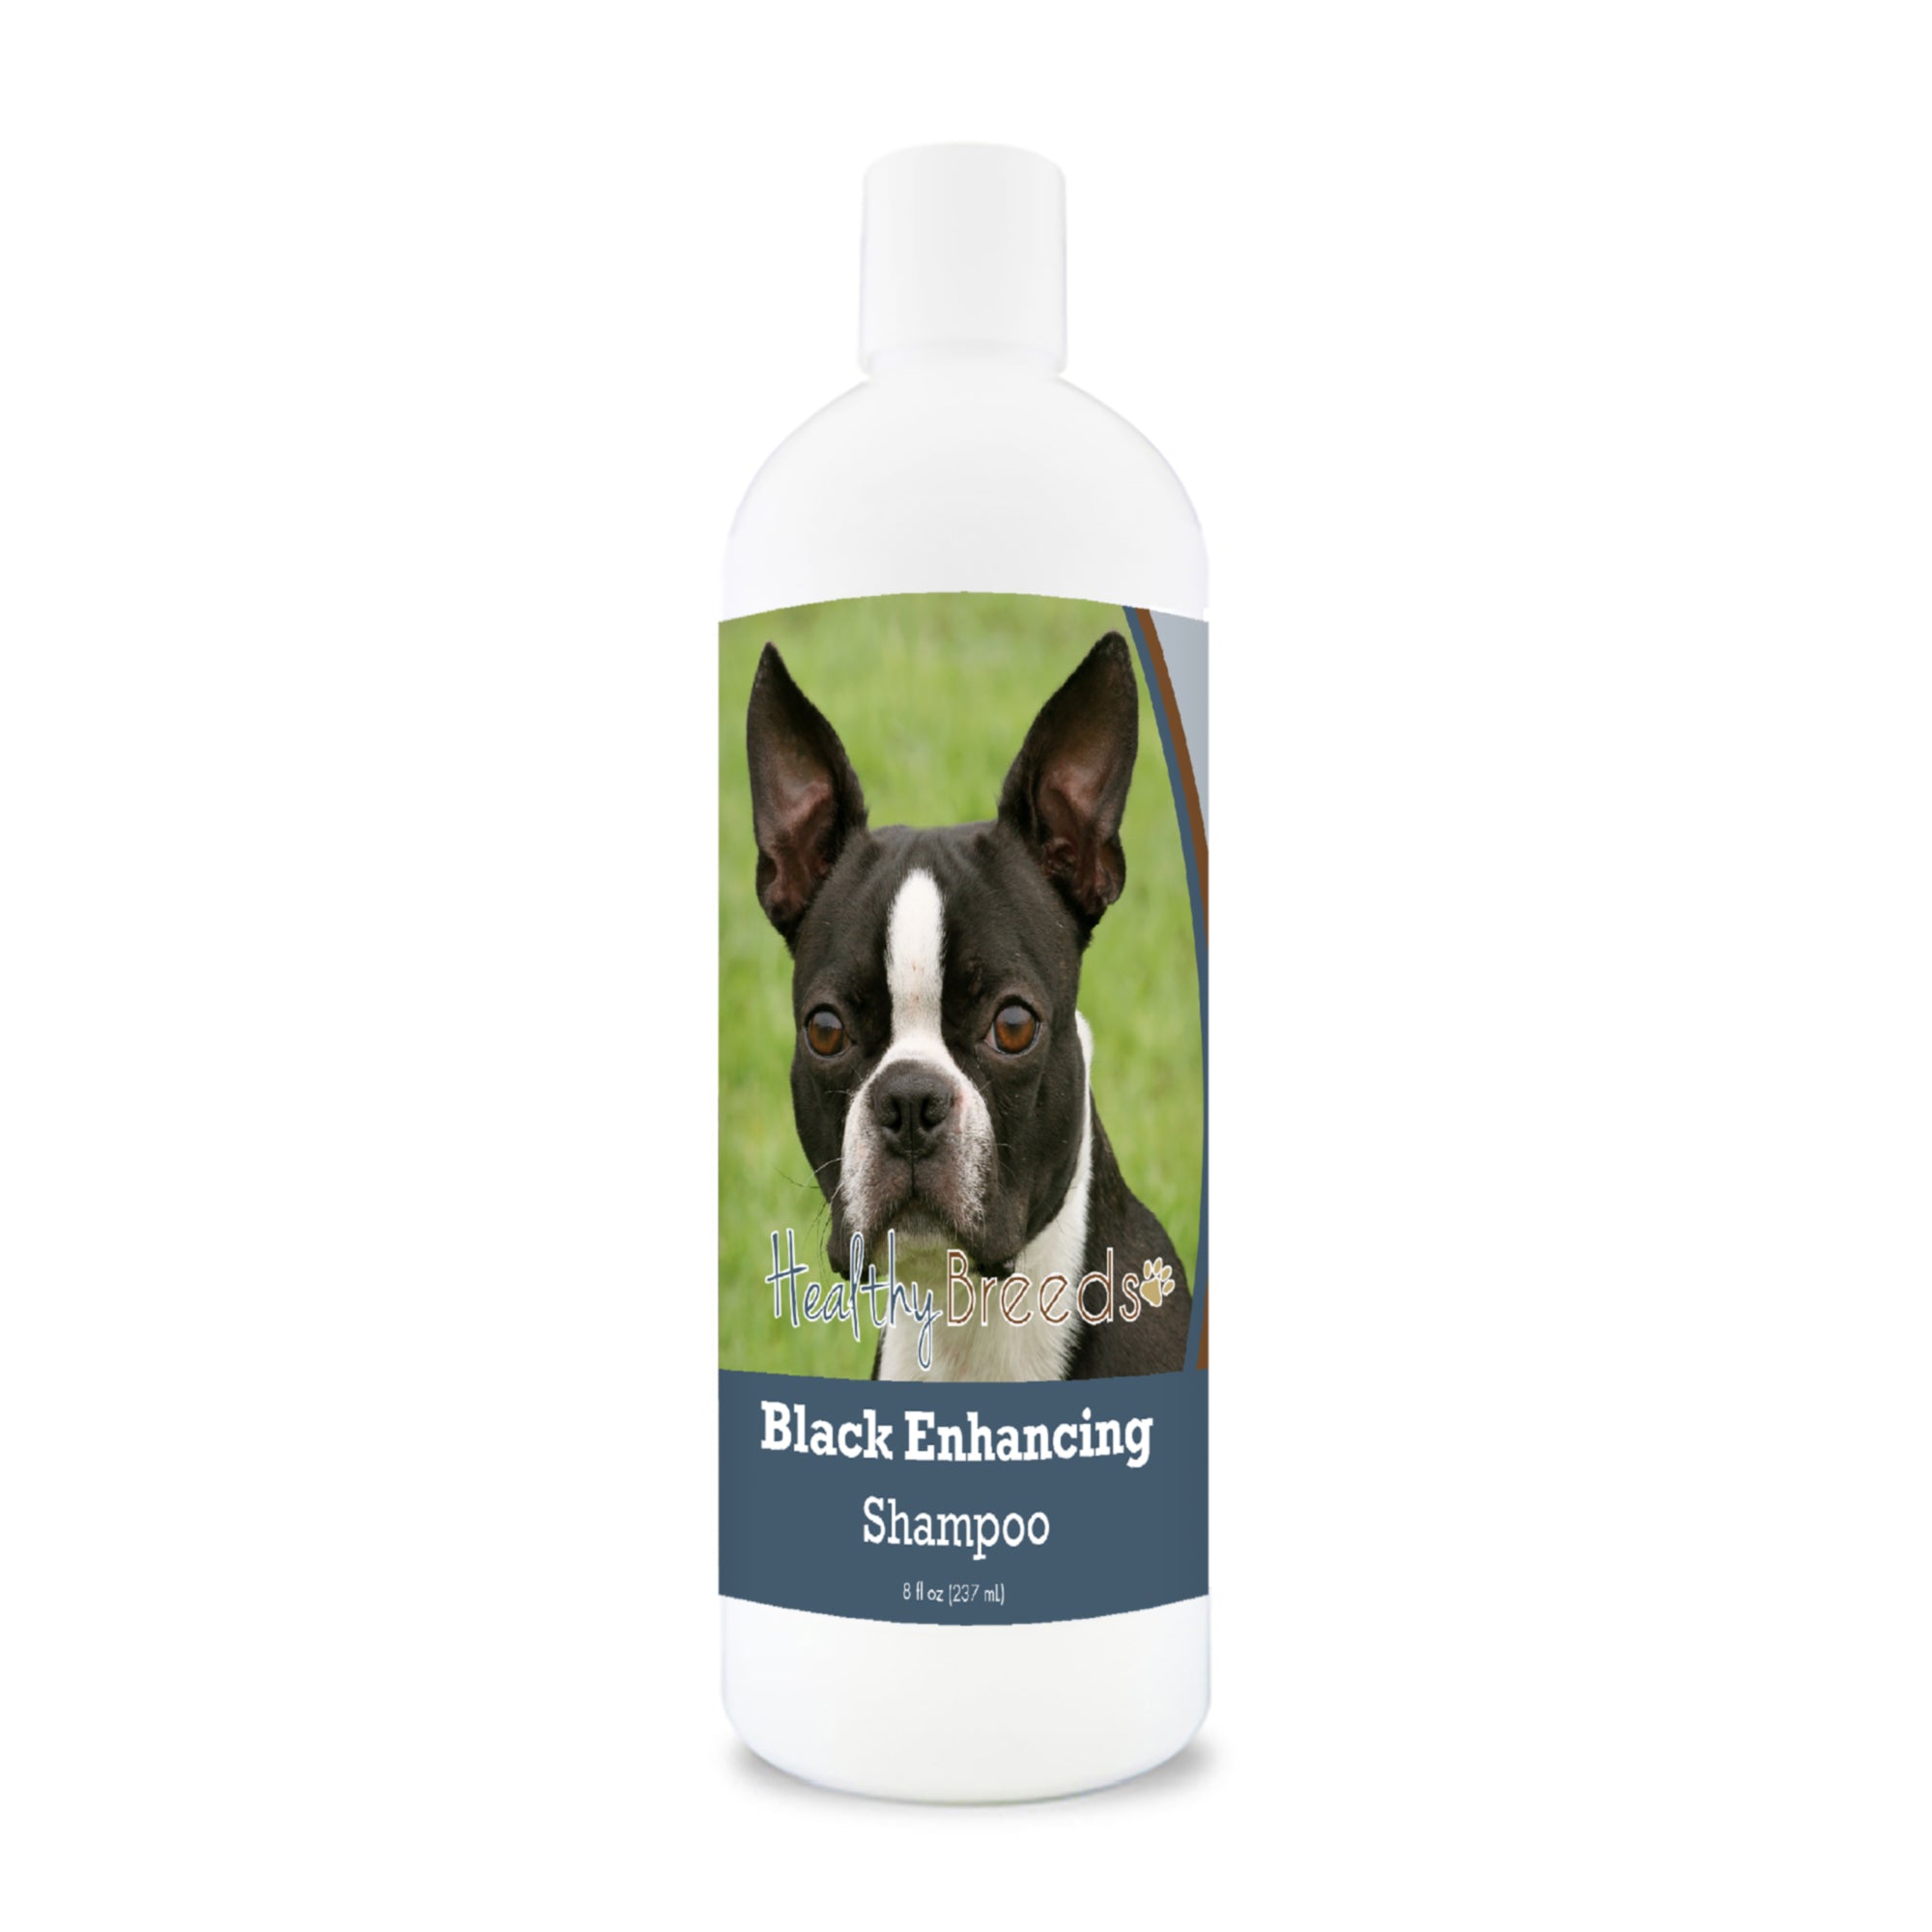 Boston Terrier Black Enhancing Shampoo 8 oz